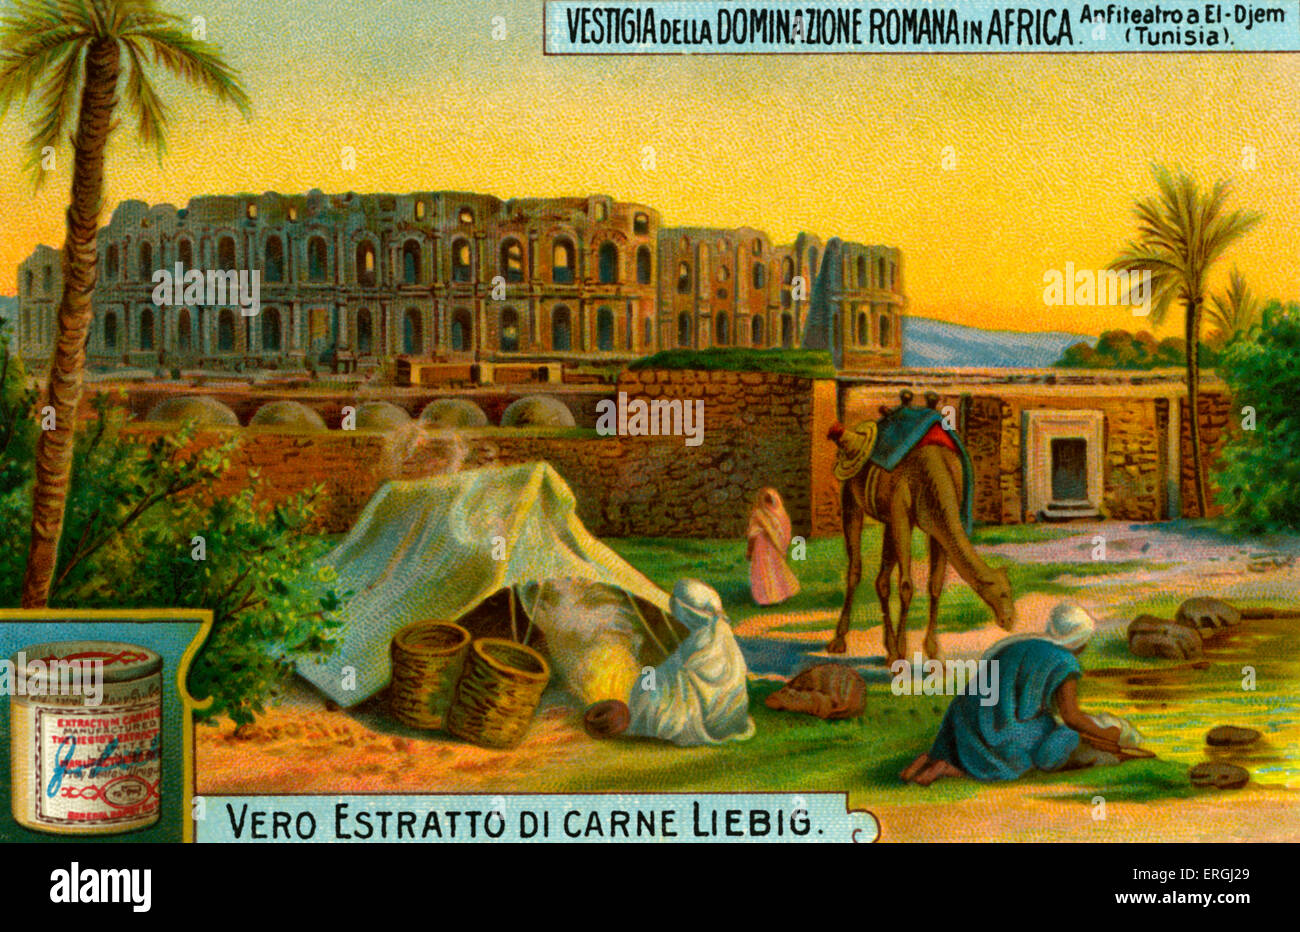 Amphitheater in El Djem, Tunesien. Illustration von Liebig Sammelkarten-Serie "Überreste des römischen Reiches in Afrika" Stockfoto